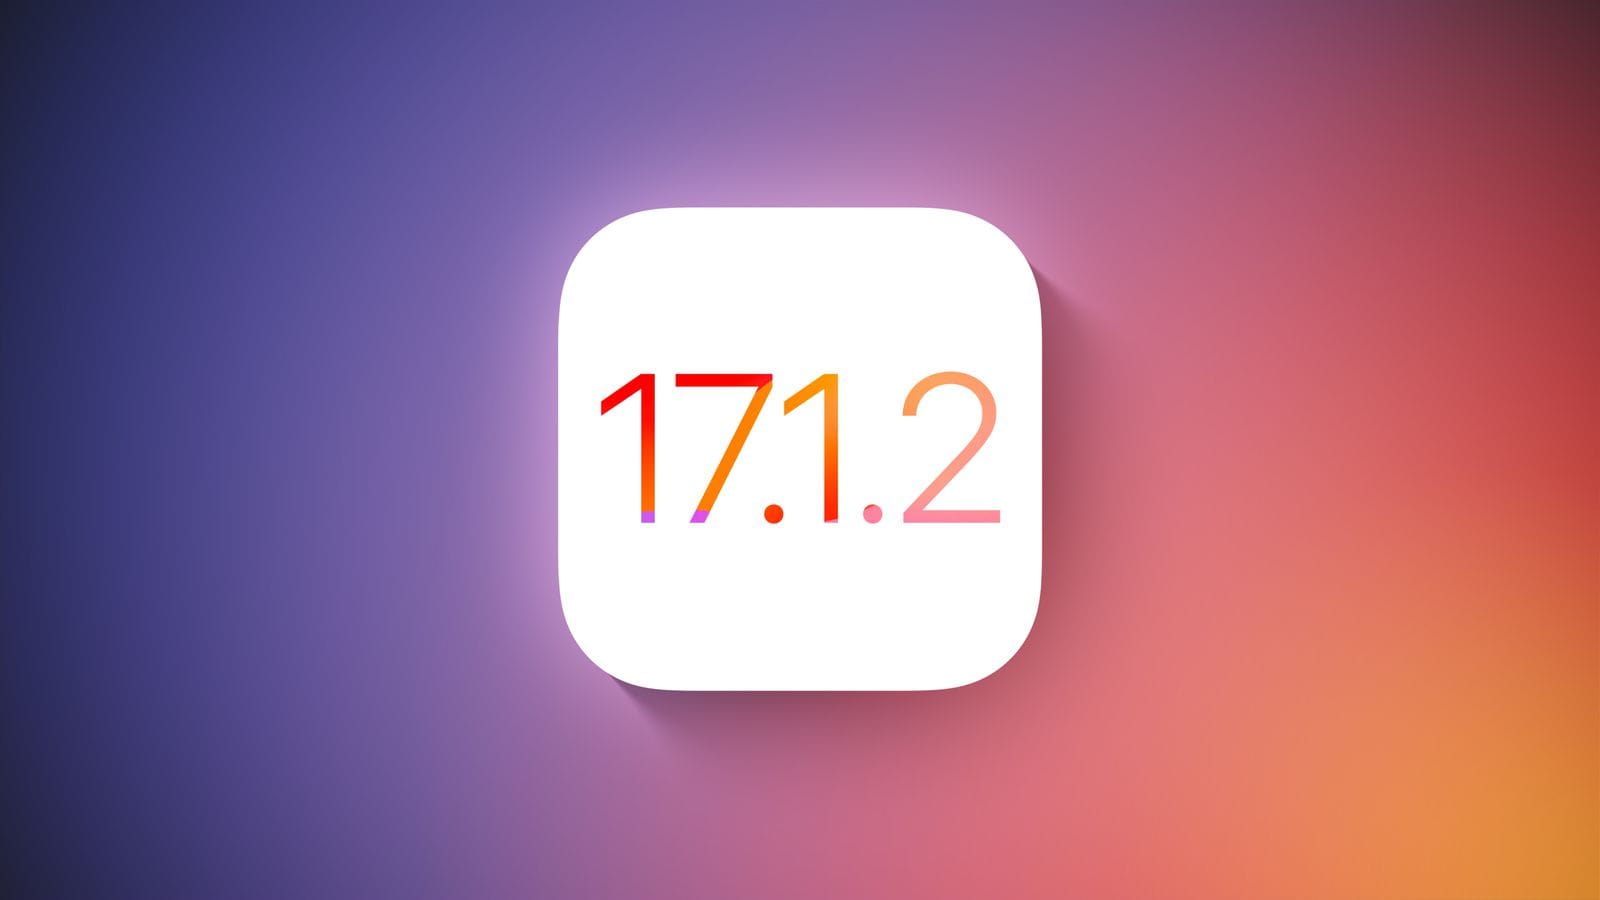 iOS 17.1.2, скорее всего, будет выпущена на этой неделе